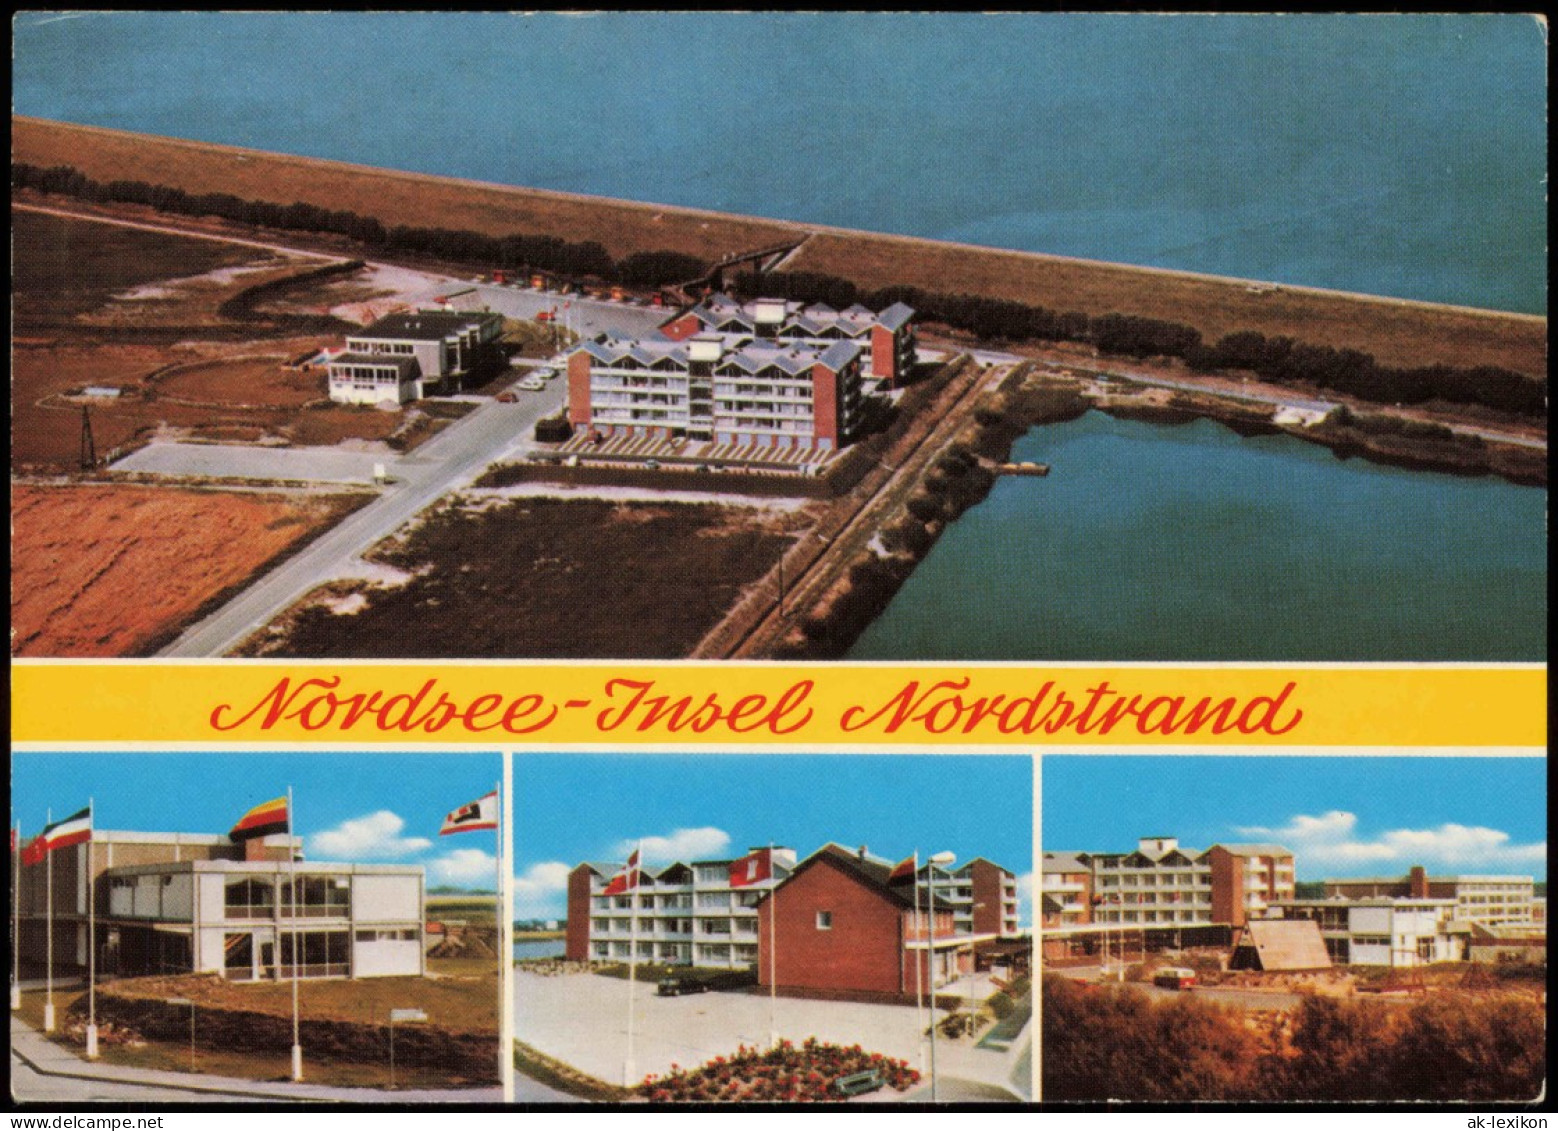 Ansichtskarte Norderney Nordsee-Insel Nordstrand (Mehrbildkarte) 1970 - Norderney